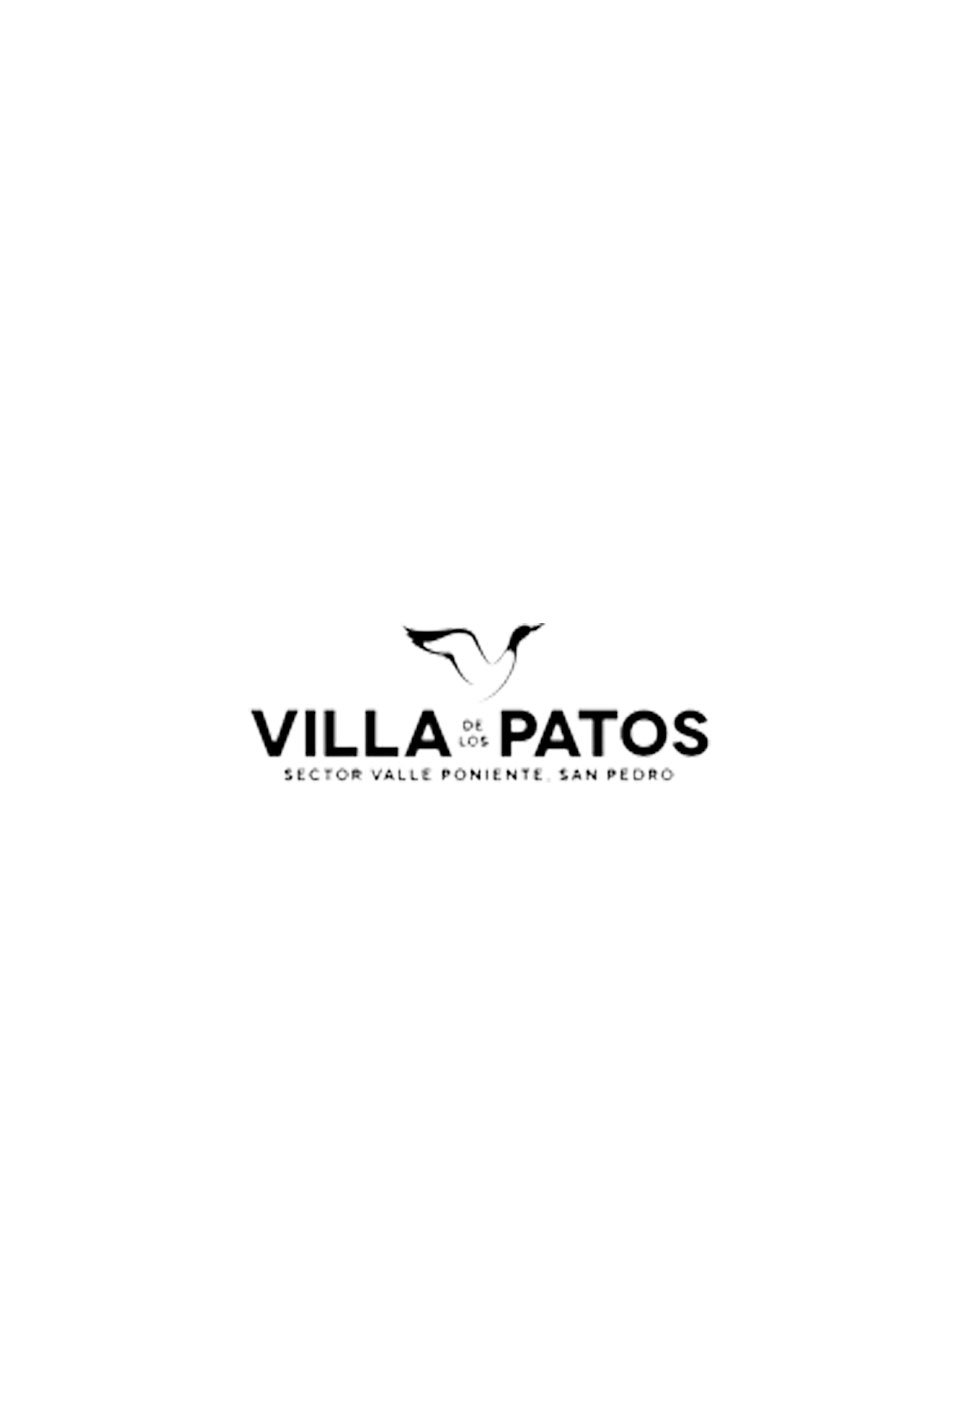 Villa de los Patos